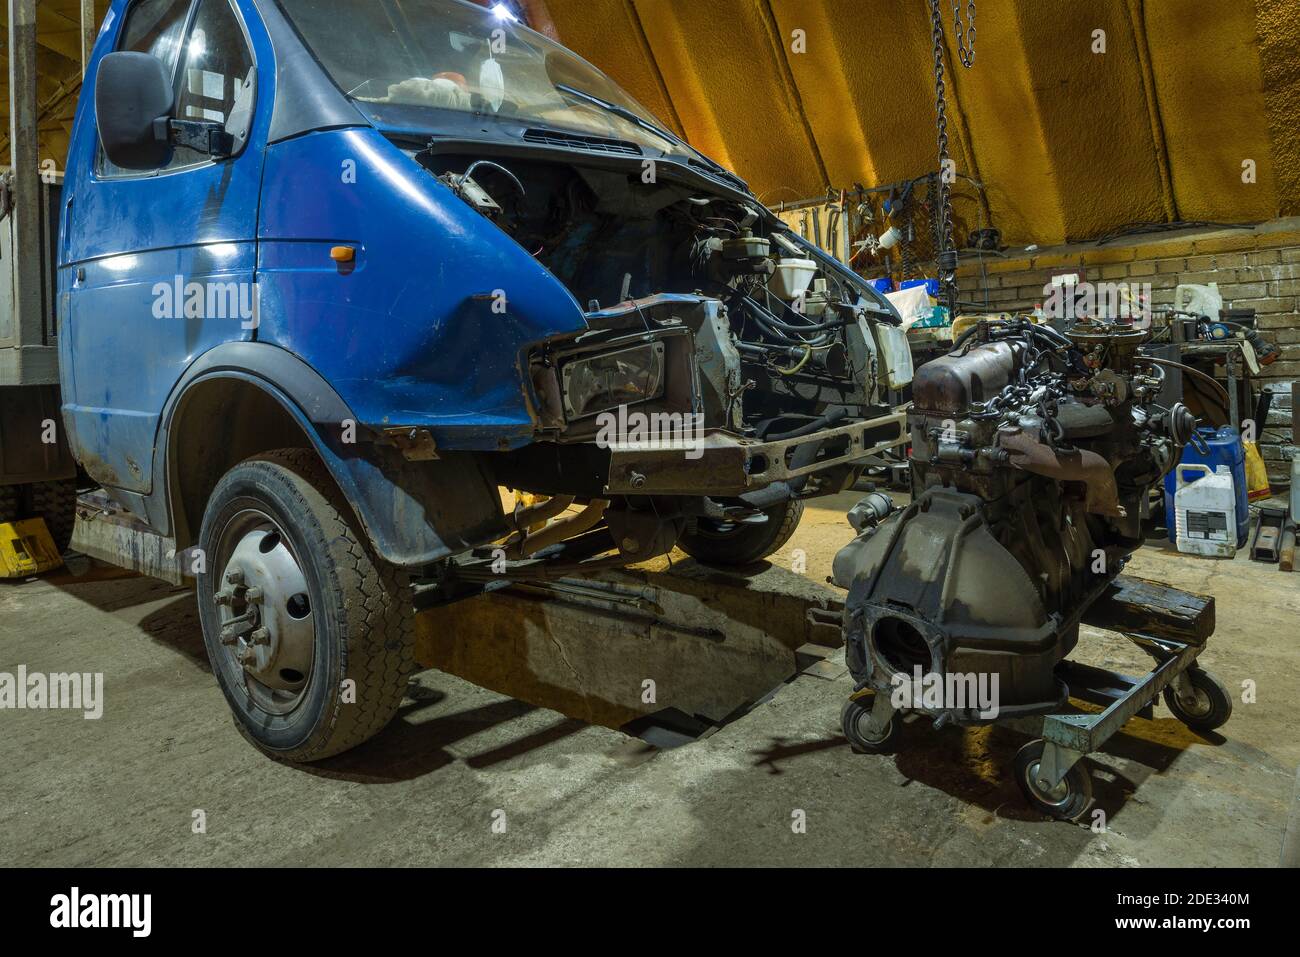 SAINT-PÉTERSBOURG, RUSSIE - 12 AOÛT 2020 : le moteur et le camion léger 'Gazelle' GAZ-3302 ont été démontés dans un service de voiture Banque D'Images